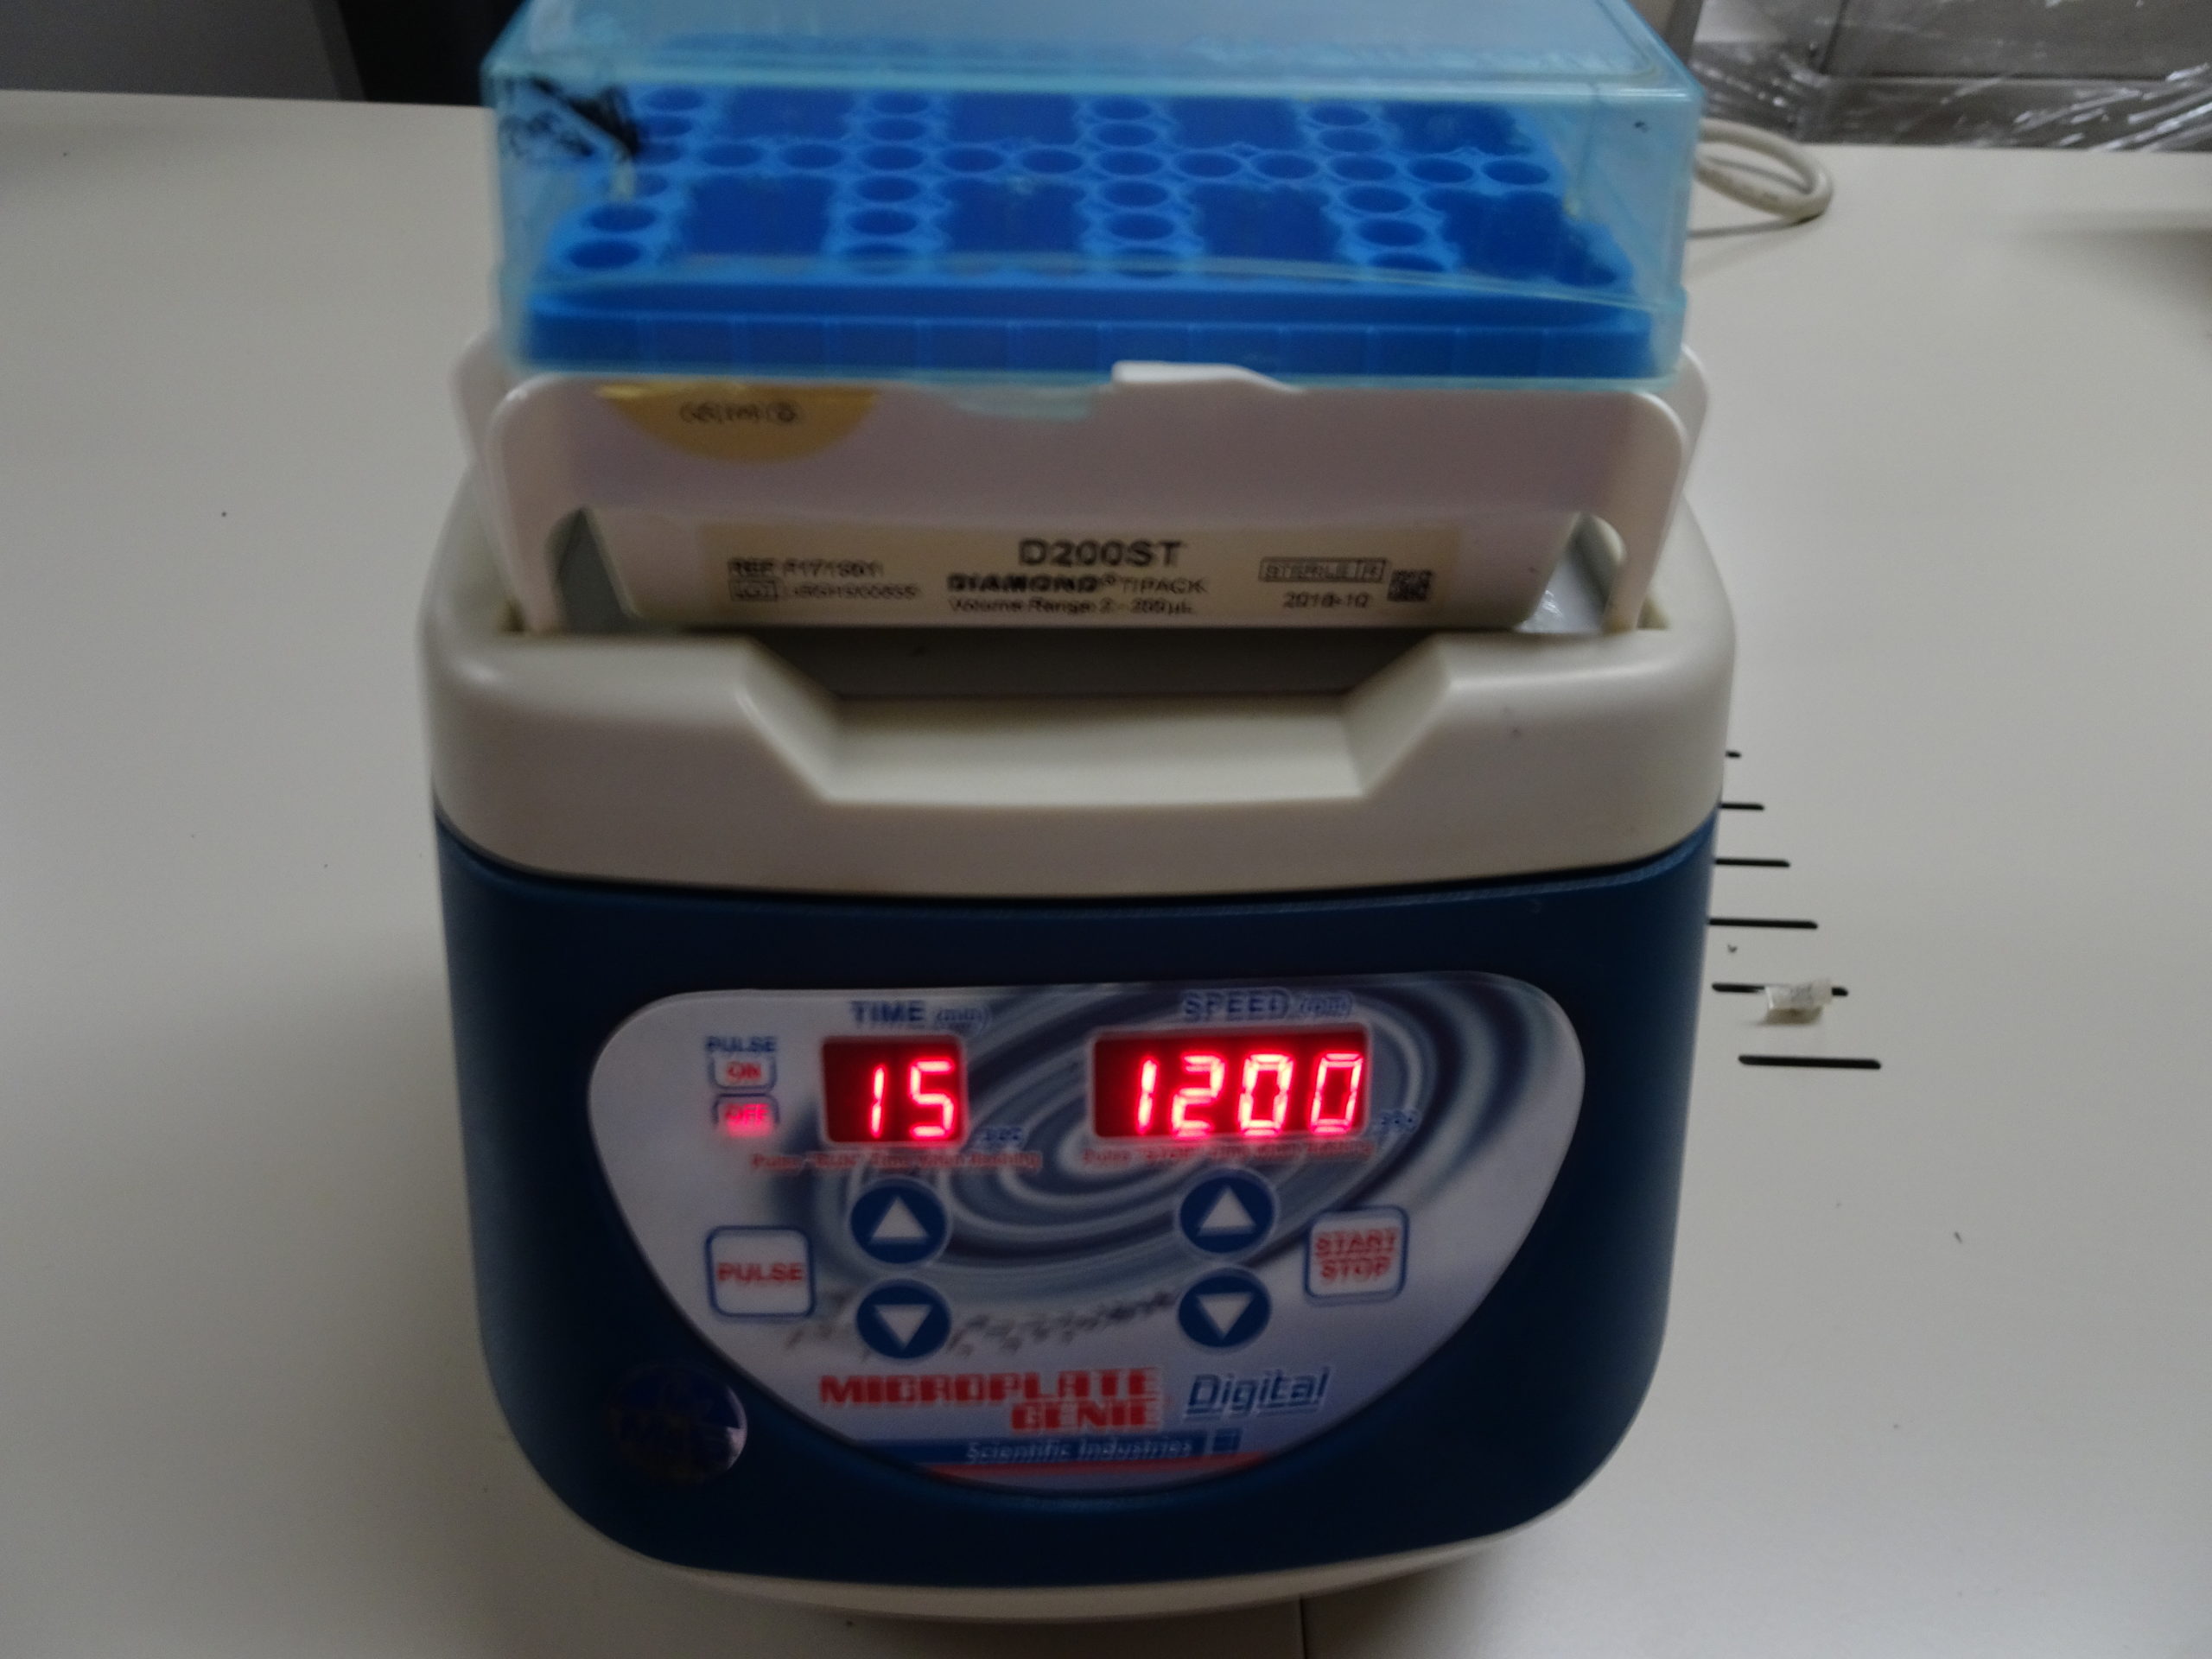 攪拌機 – BIOff -理化学機器・医療機器・分析機器の販売システム